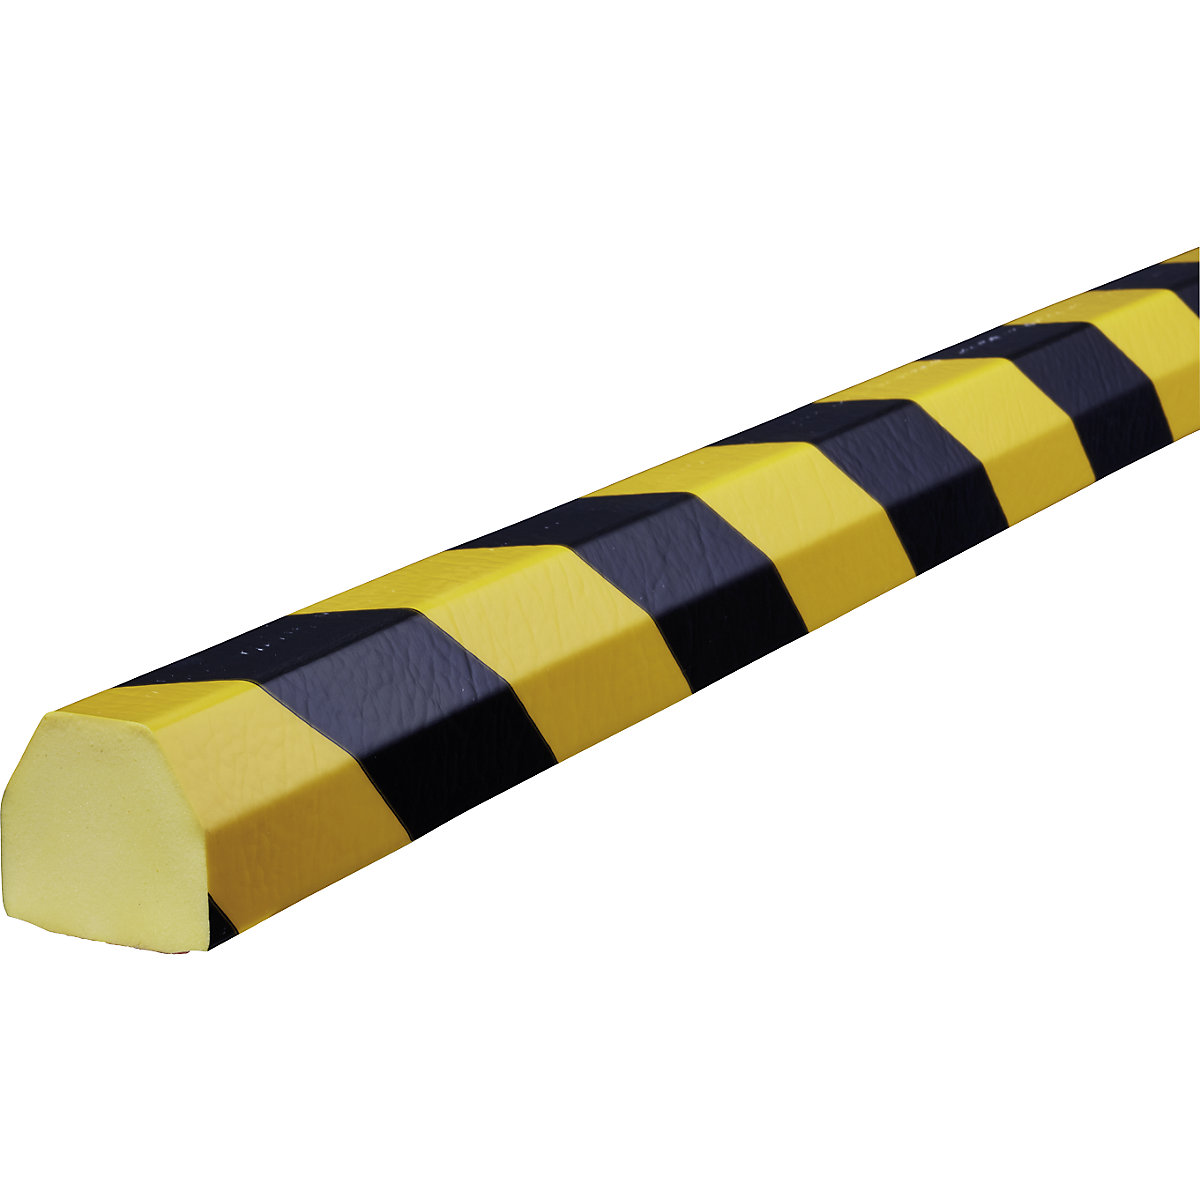 Proteção de superfícies Knuffi® – SHG, tipo CC, 1 rolo de 5 m, preto/amarelo-19